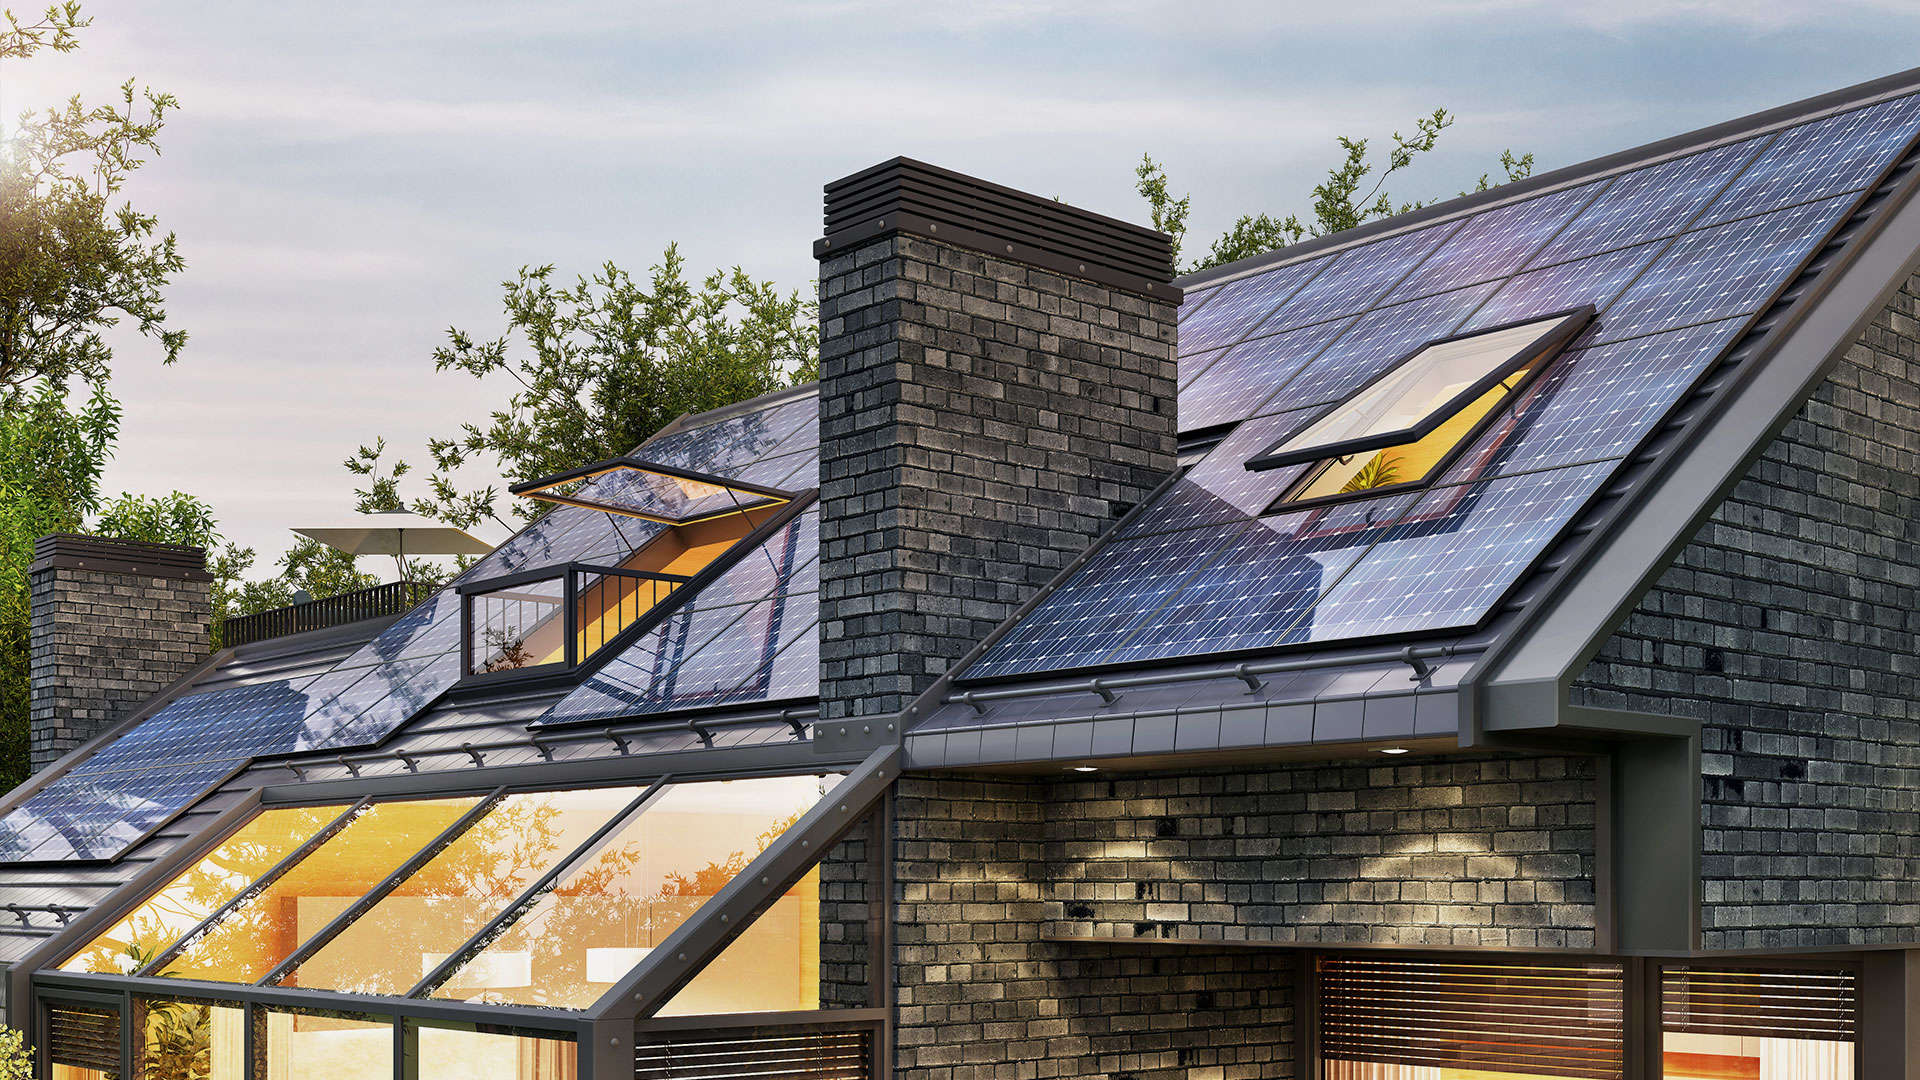 nowoczesny dom z panelami fotowoltaicznymi na dachu -  w 2022